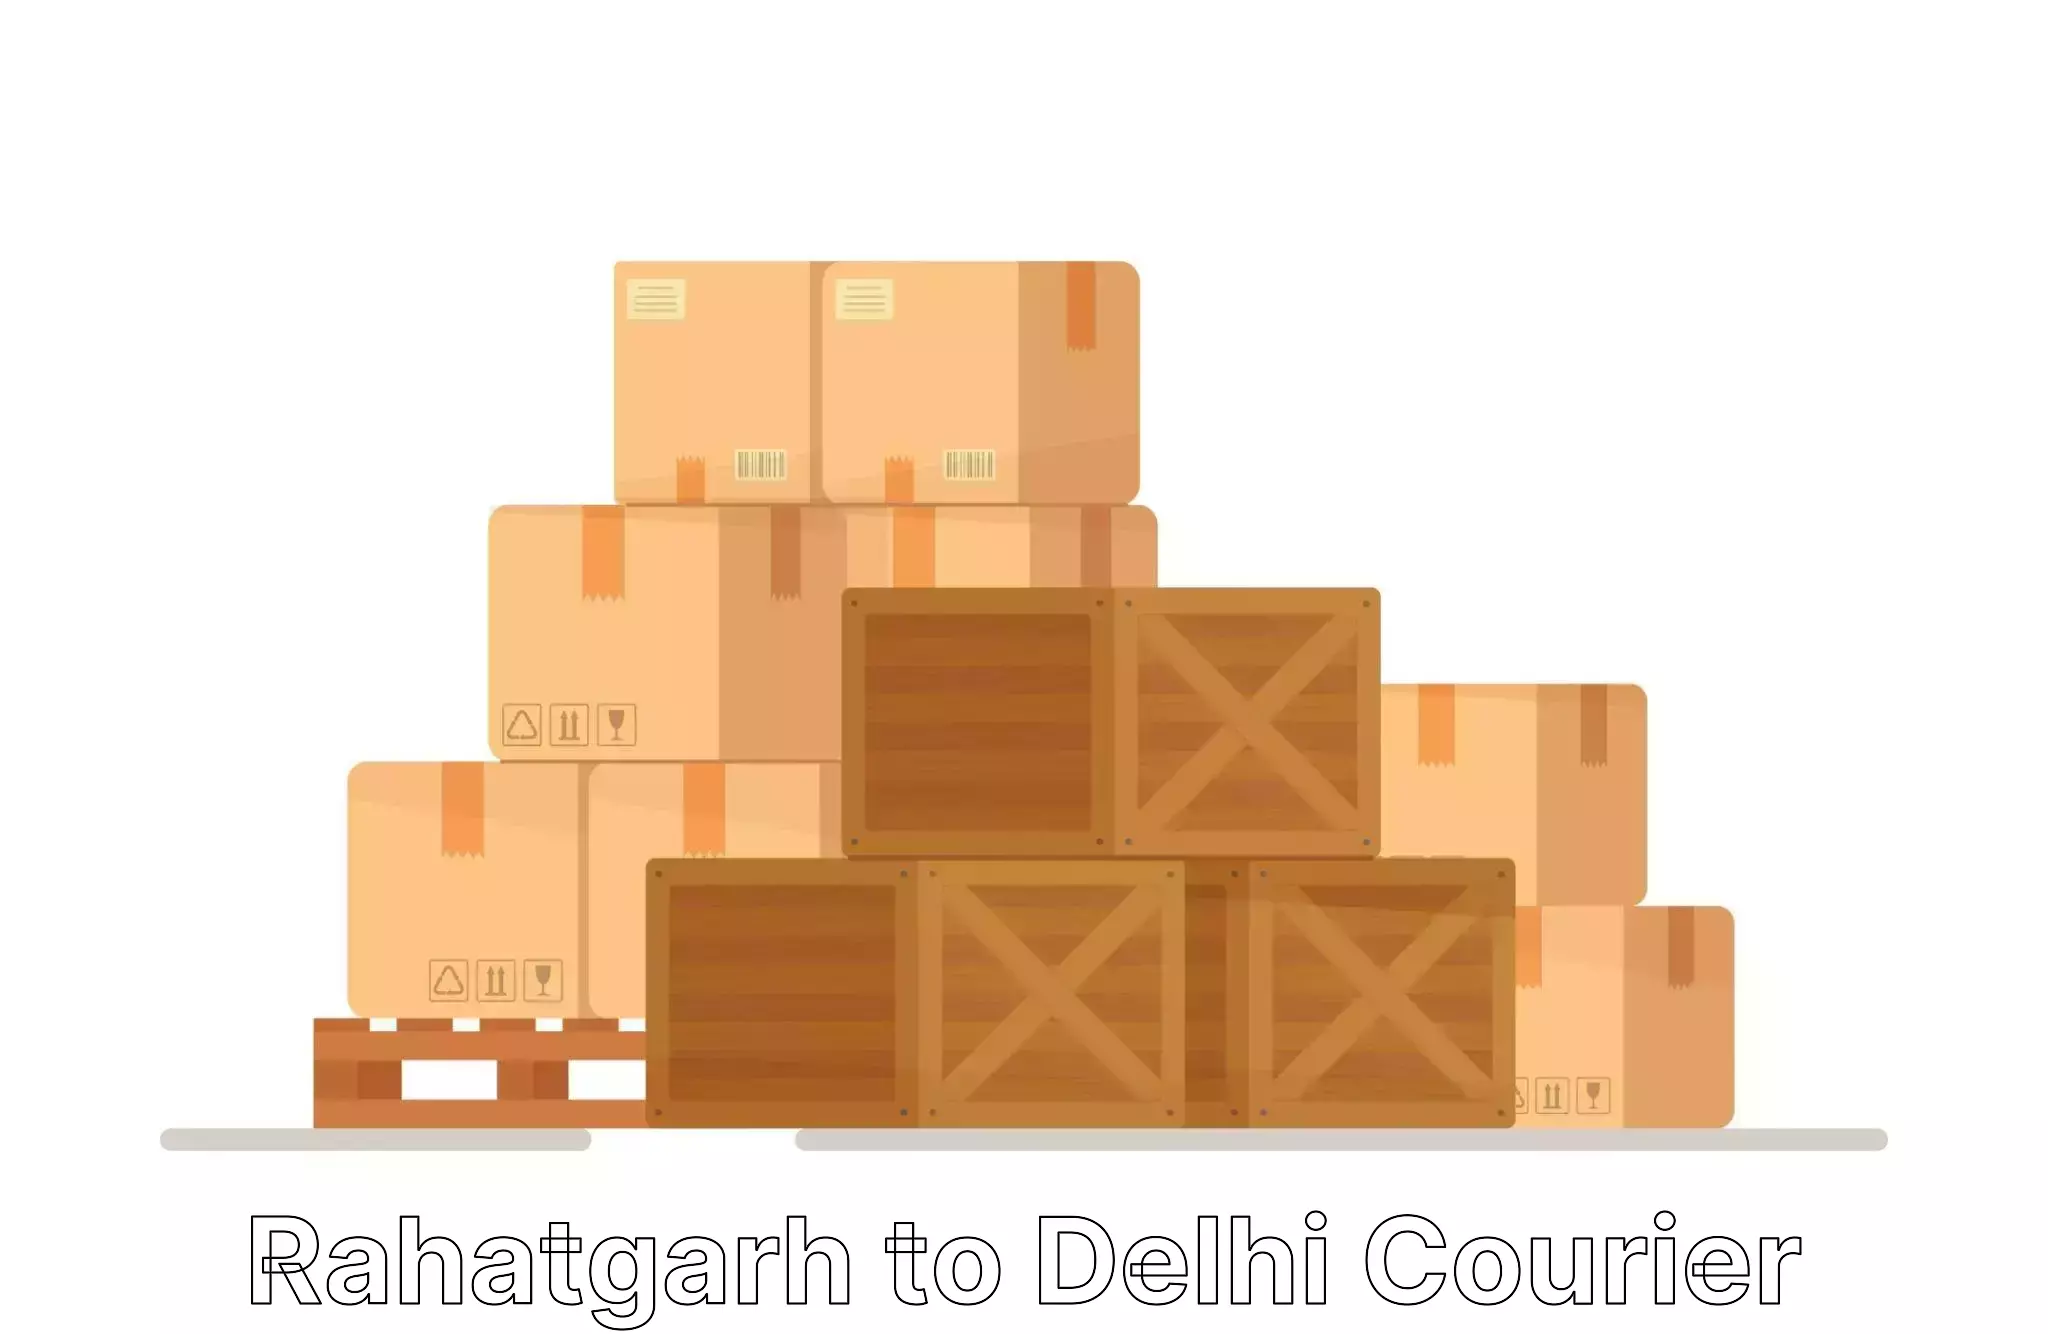 Home relocation and storage Rahatgarh to Jawaharlal Nehru University New Delhi